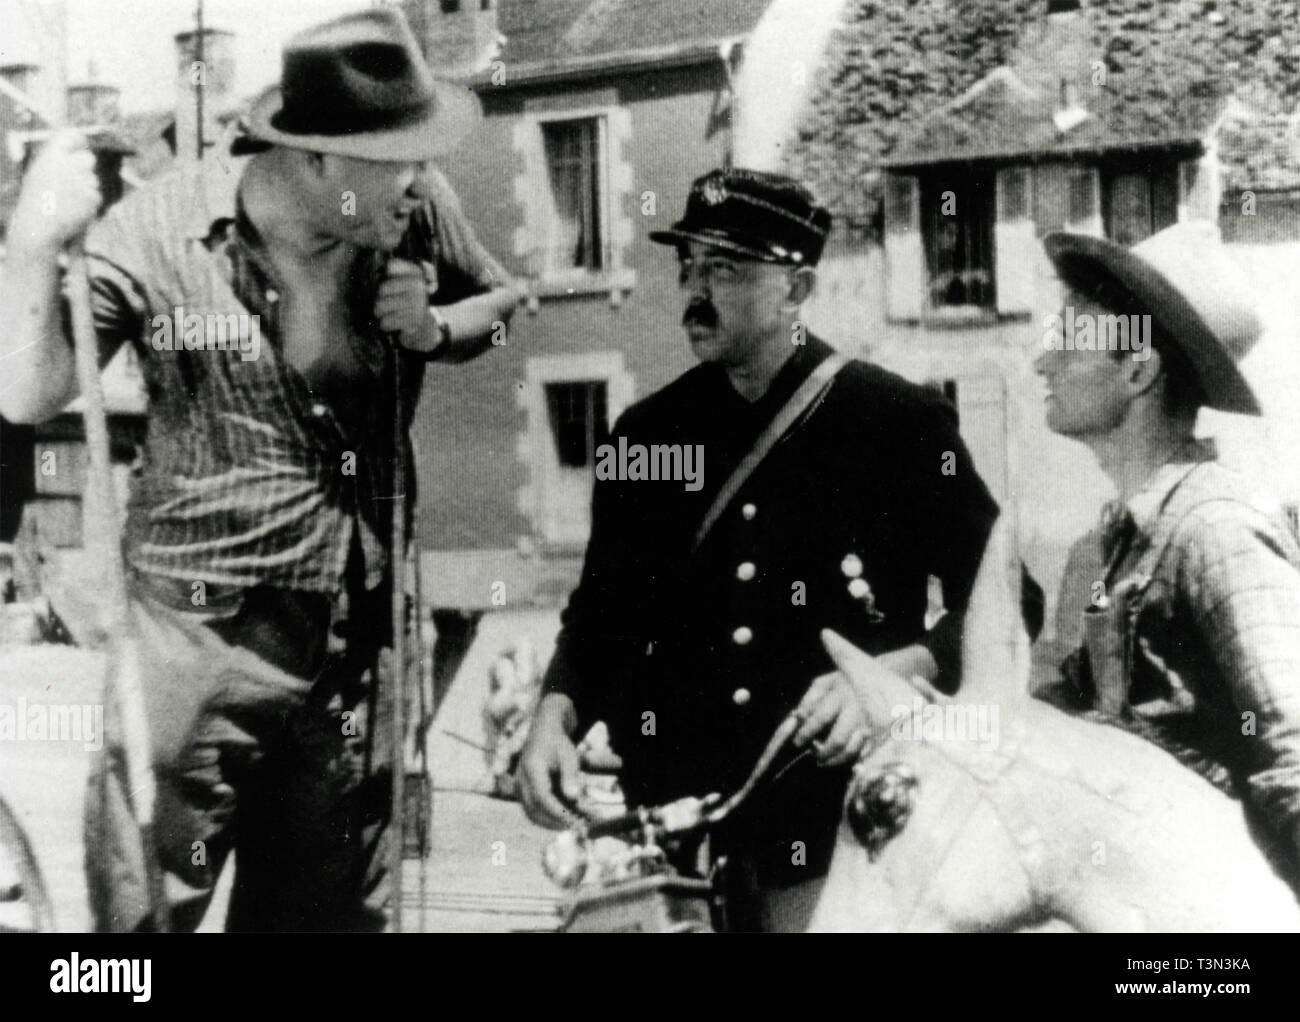 El actor francés Jacques Tati en la película Jour de fete, 1949 Foto de stock